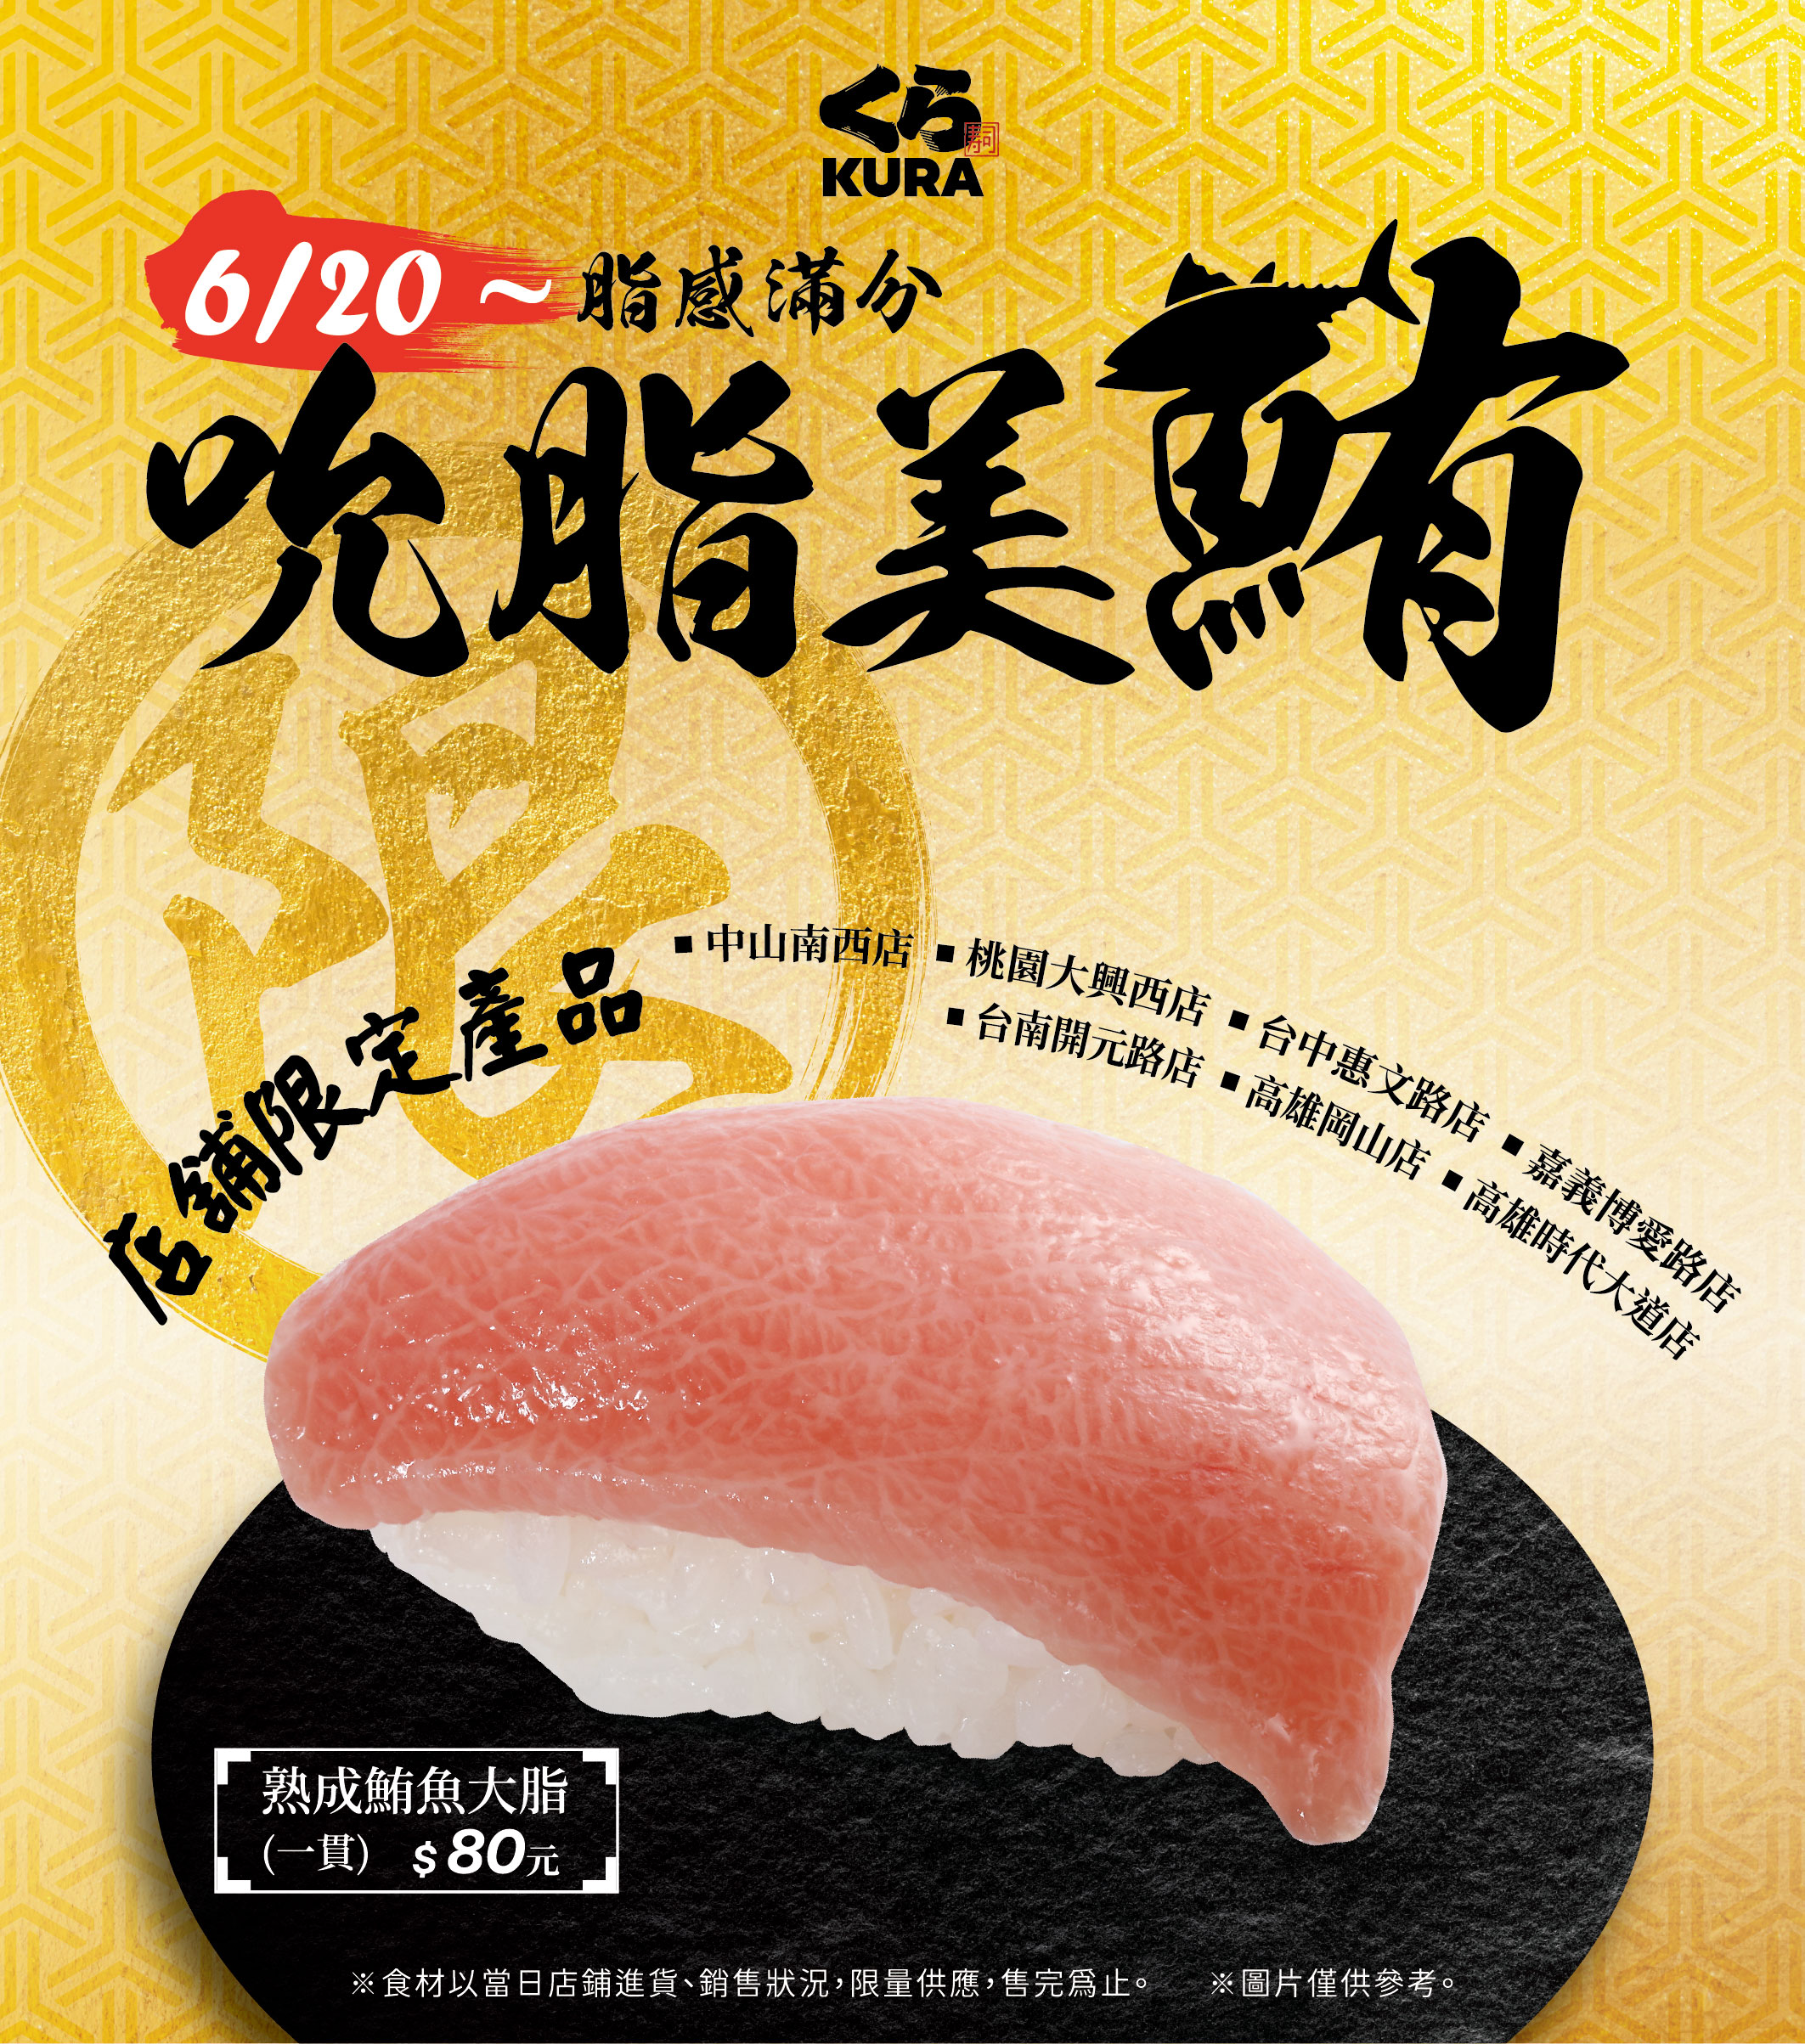 鮪魚控準備吃爆٩(♡ε♡ )۶ 藏壽司7家店鋪限定販售
熟成鮪魚大脂 豐富的油花讓口感滑順， 令人欲罷不能，是此次絕不容錯過的奢華極品
